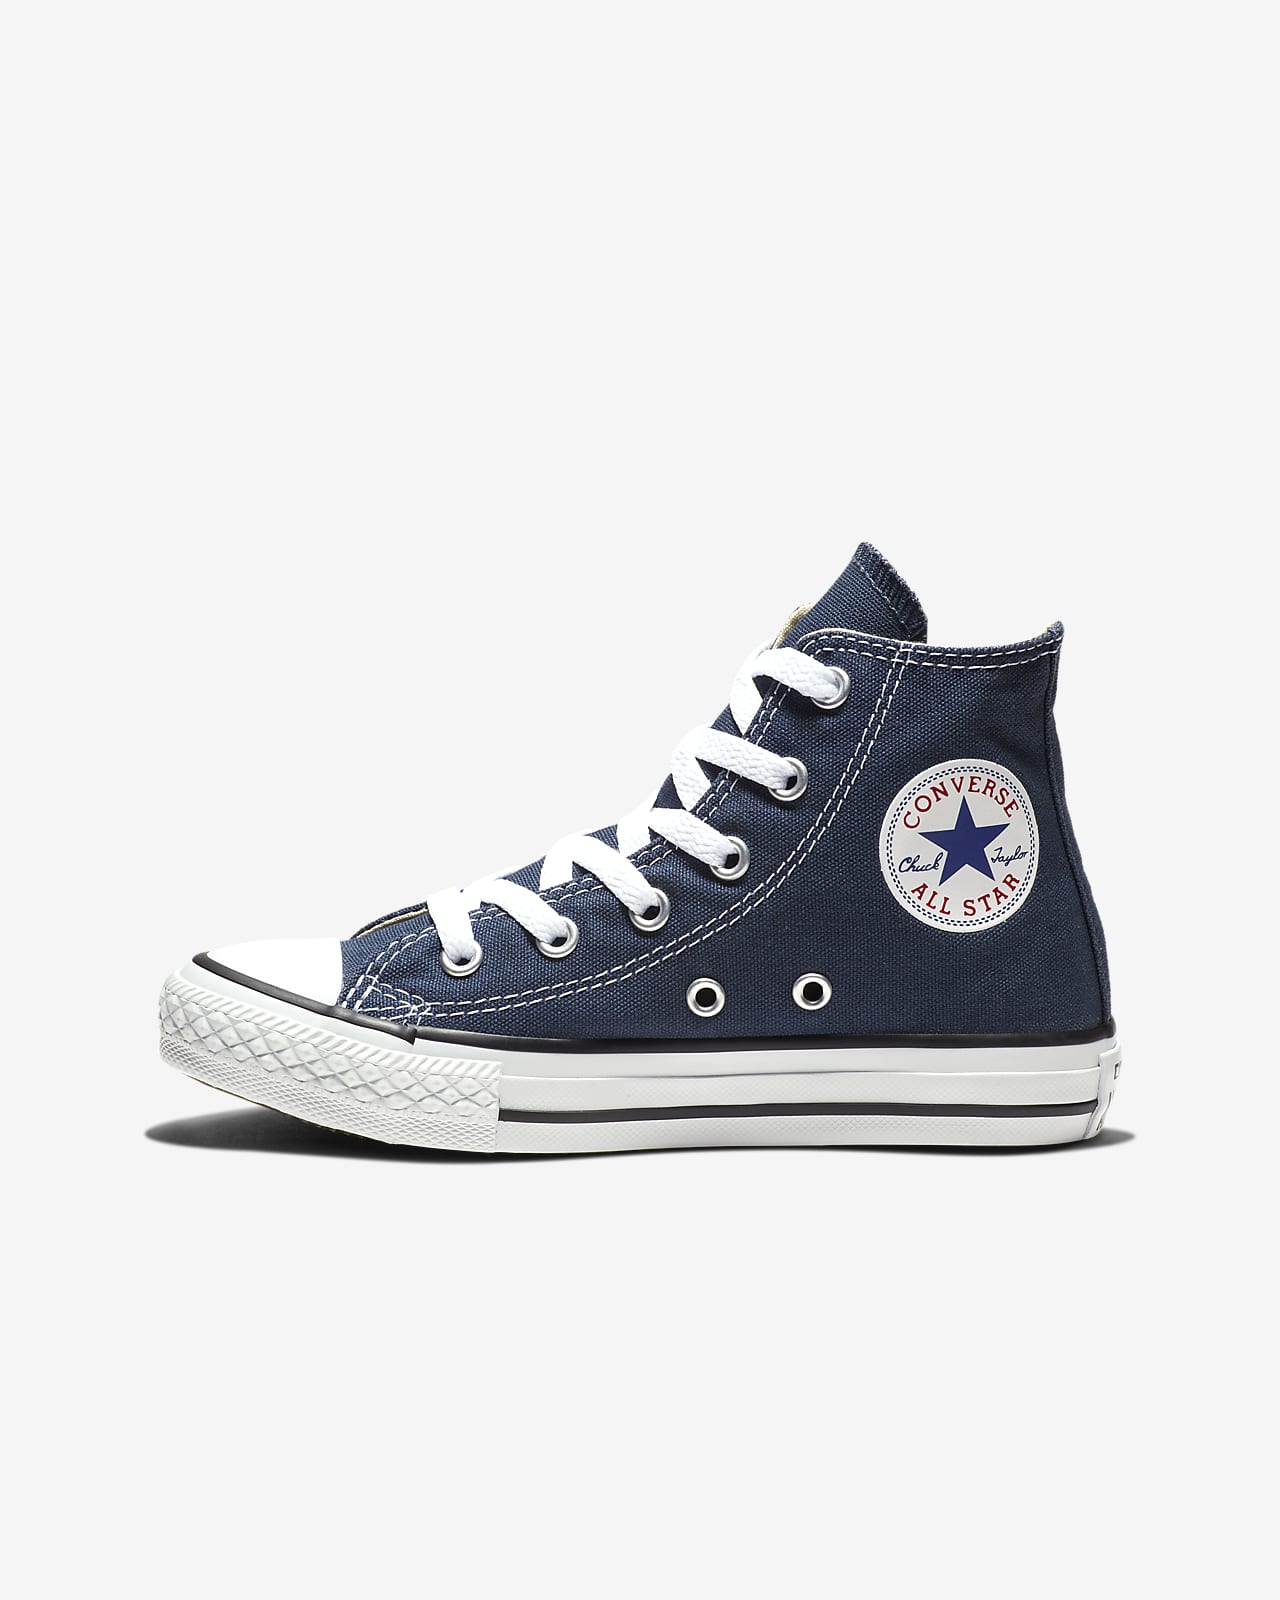 Converse Chuck Taylor All Star High Top () Little Kids' Shoe.  